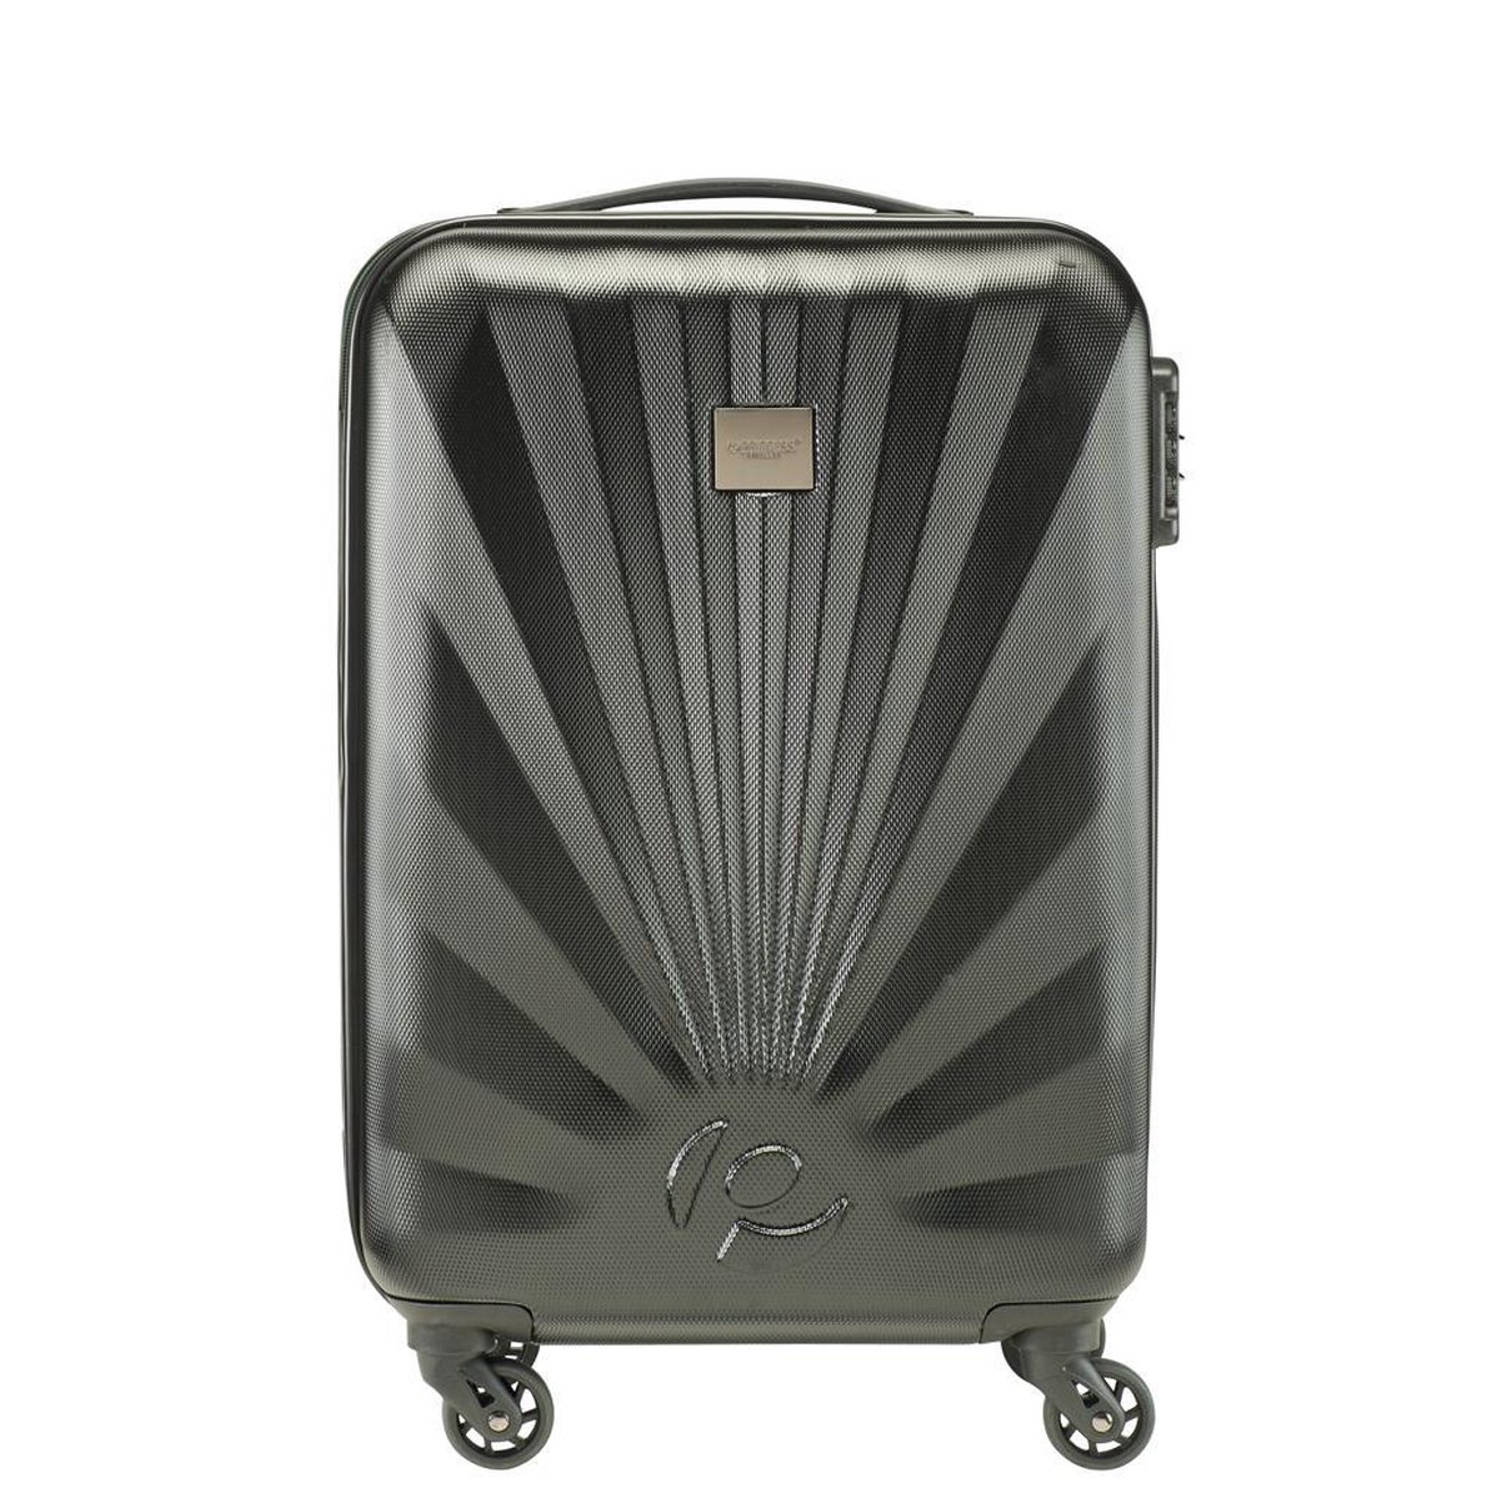 Fascinerend Correlaat Meesterschap Princess Traveller Nice - Handbagage Koffer - 55cm - Zwart/Groen - Met  Powerbank | Blokker